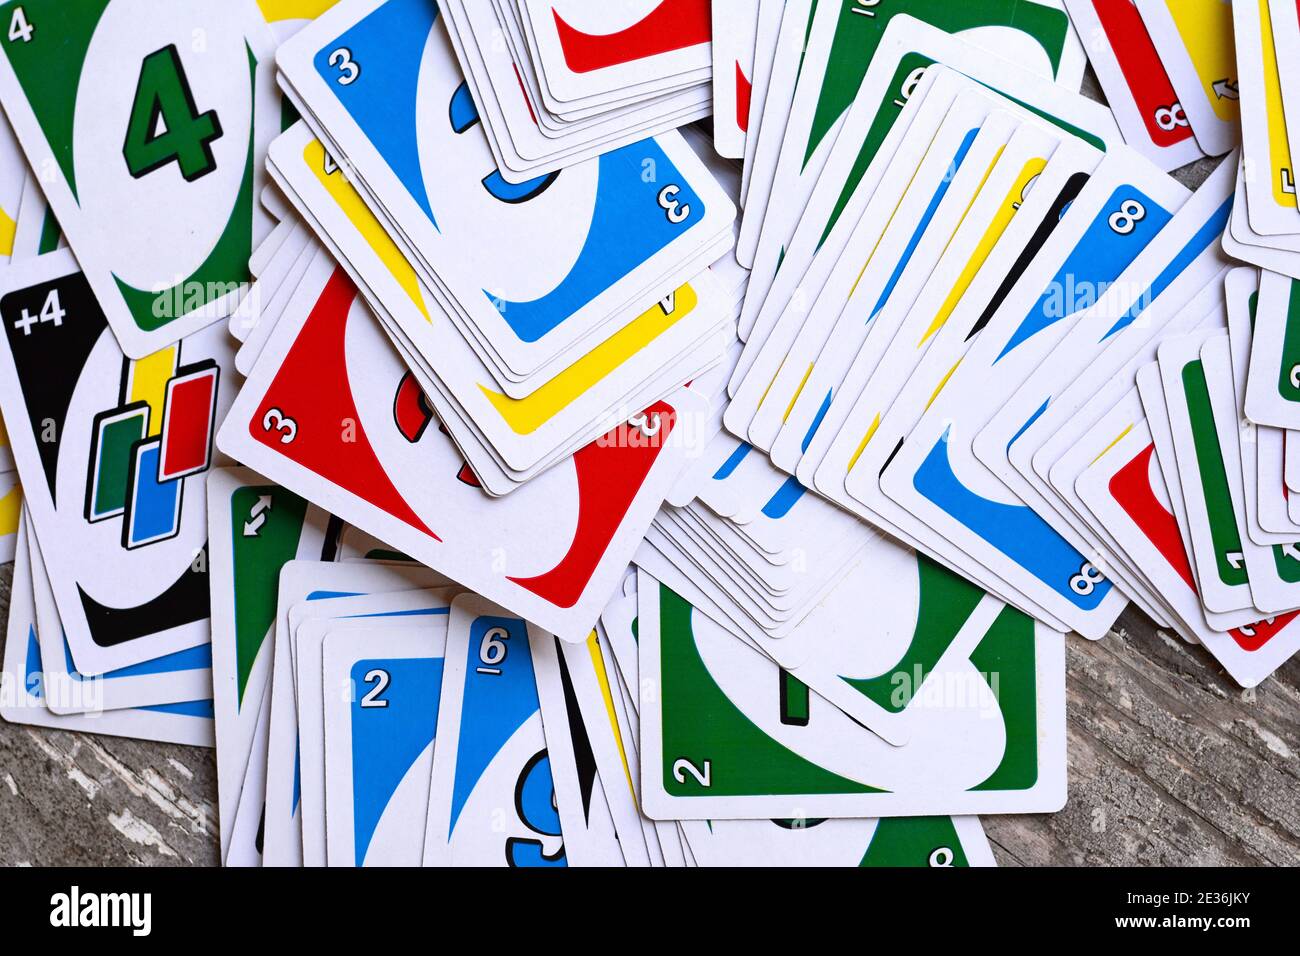 Uno playing cards: Cùng tận hưởng những giây phút vui vẻ và đầy kích thích với trò chơi Uno và các thẻ chơi tuyệt vời của nó. Với những chiến thuật táo bạo của mình, bạn sẽ dễ dàng chiến thắng và giành chiến thắng. Hãy cùng nhau chơi Uno và trở thành tay chơi giỏi nhất nhé!